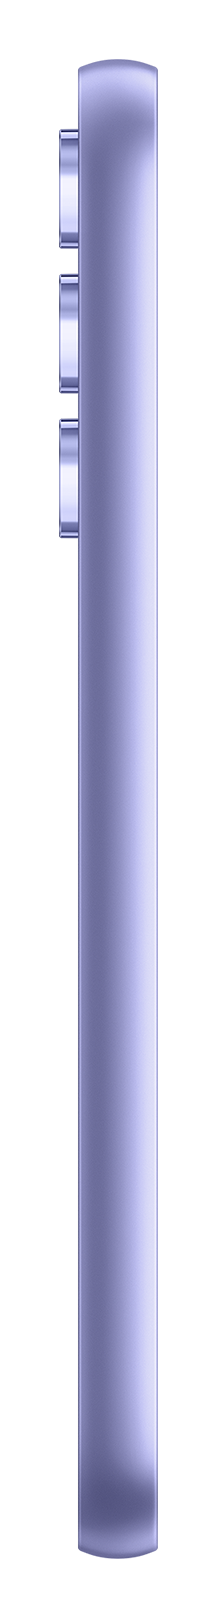 Samsung A54 violet side